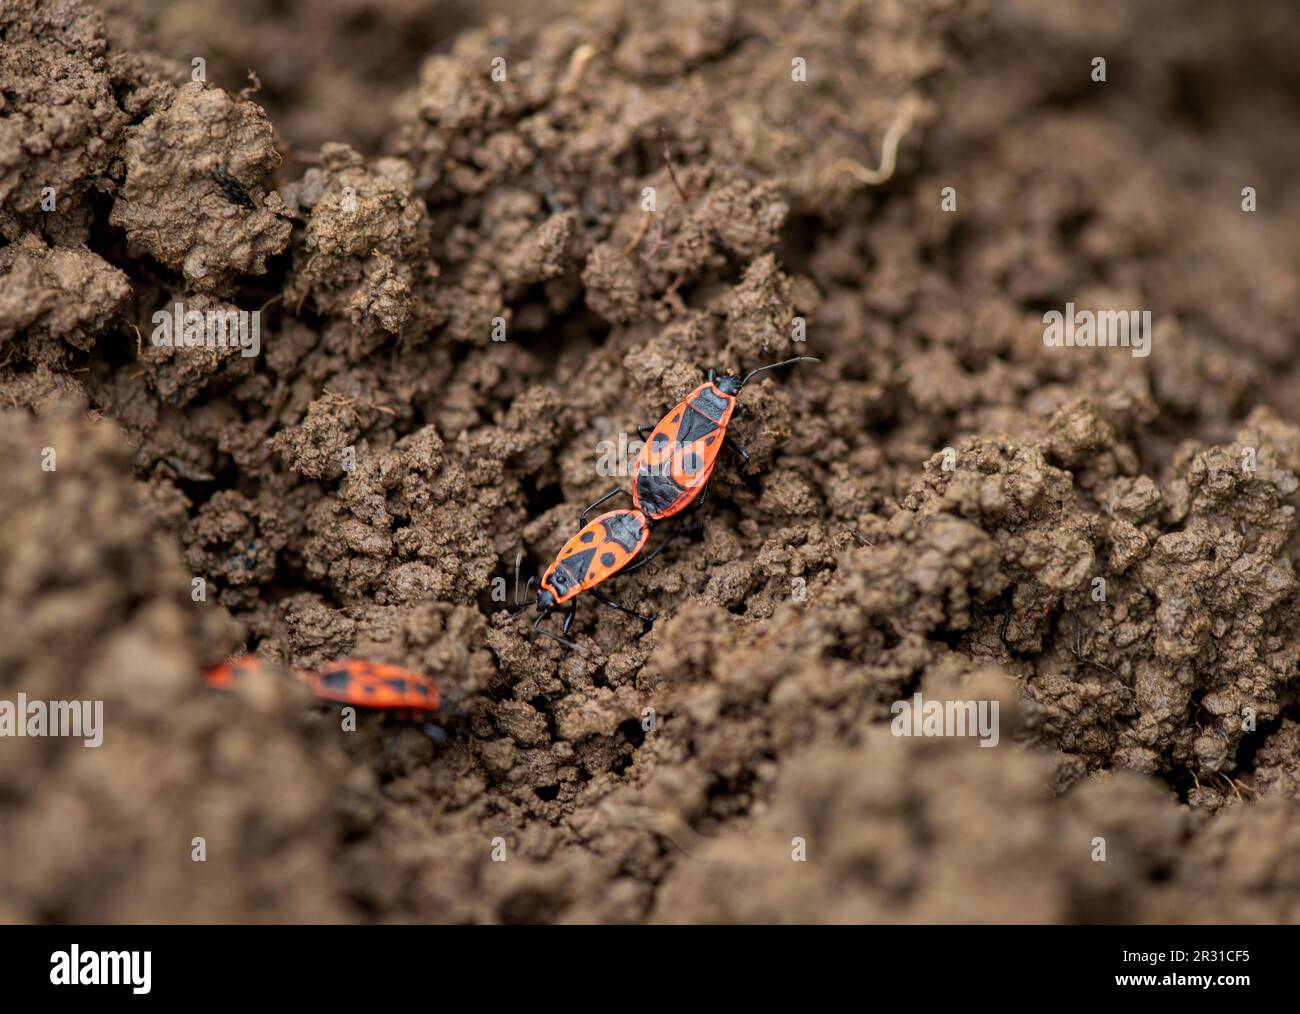 Firebug, Pyrrhocoris apterus. Mating. Slovenia. Stock Photo